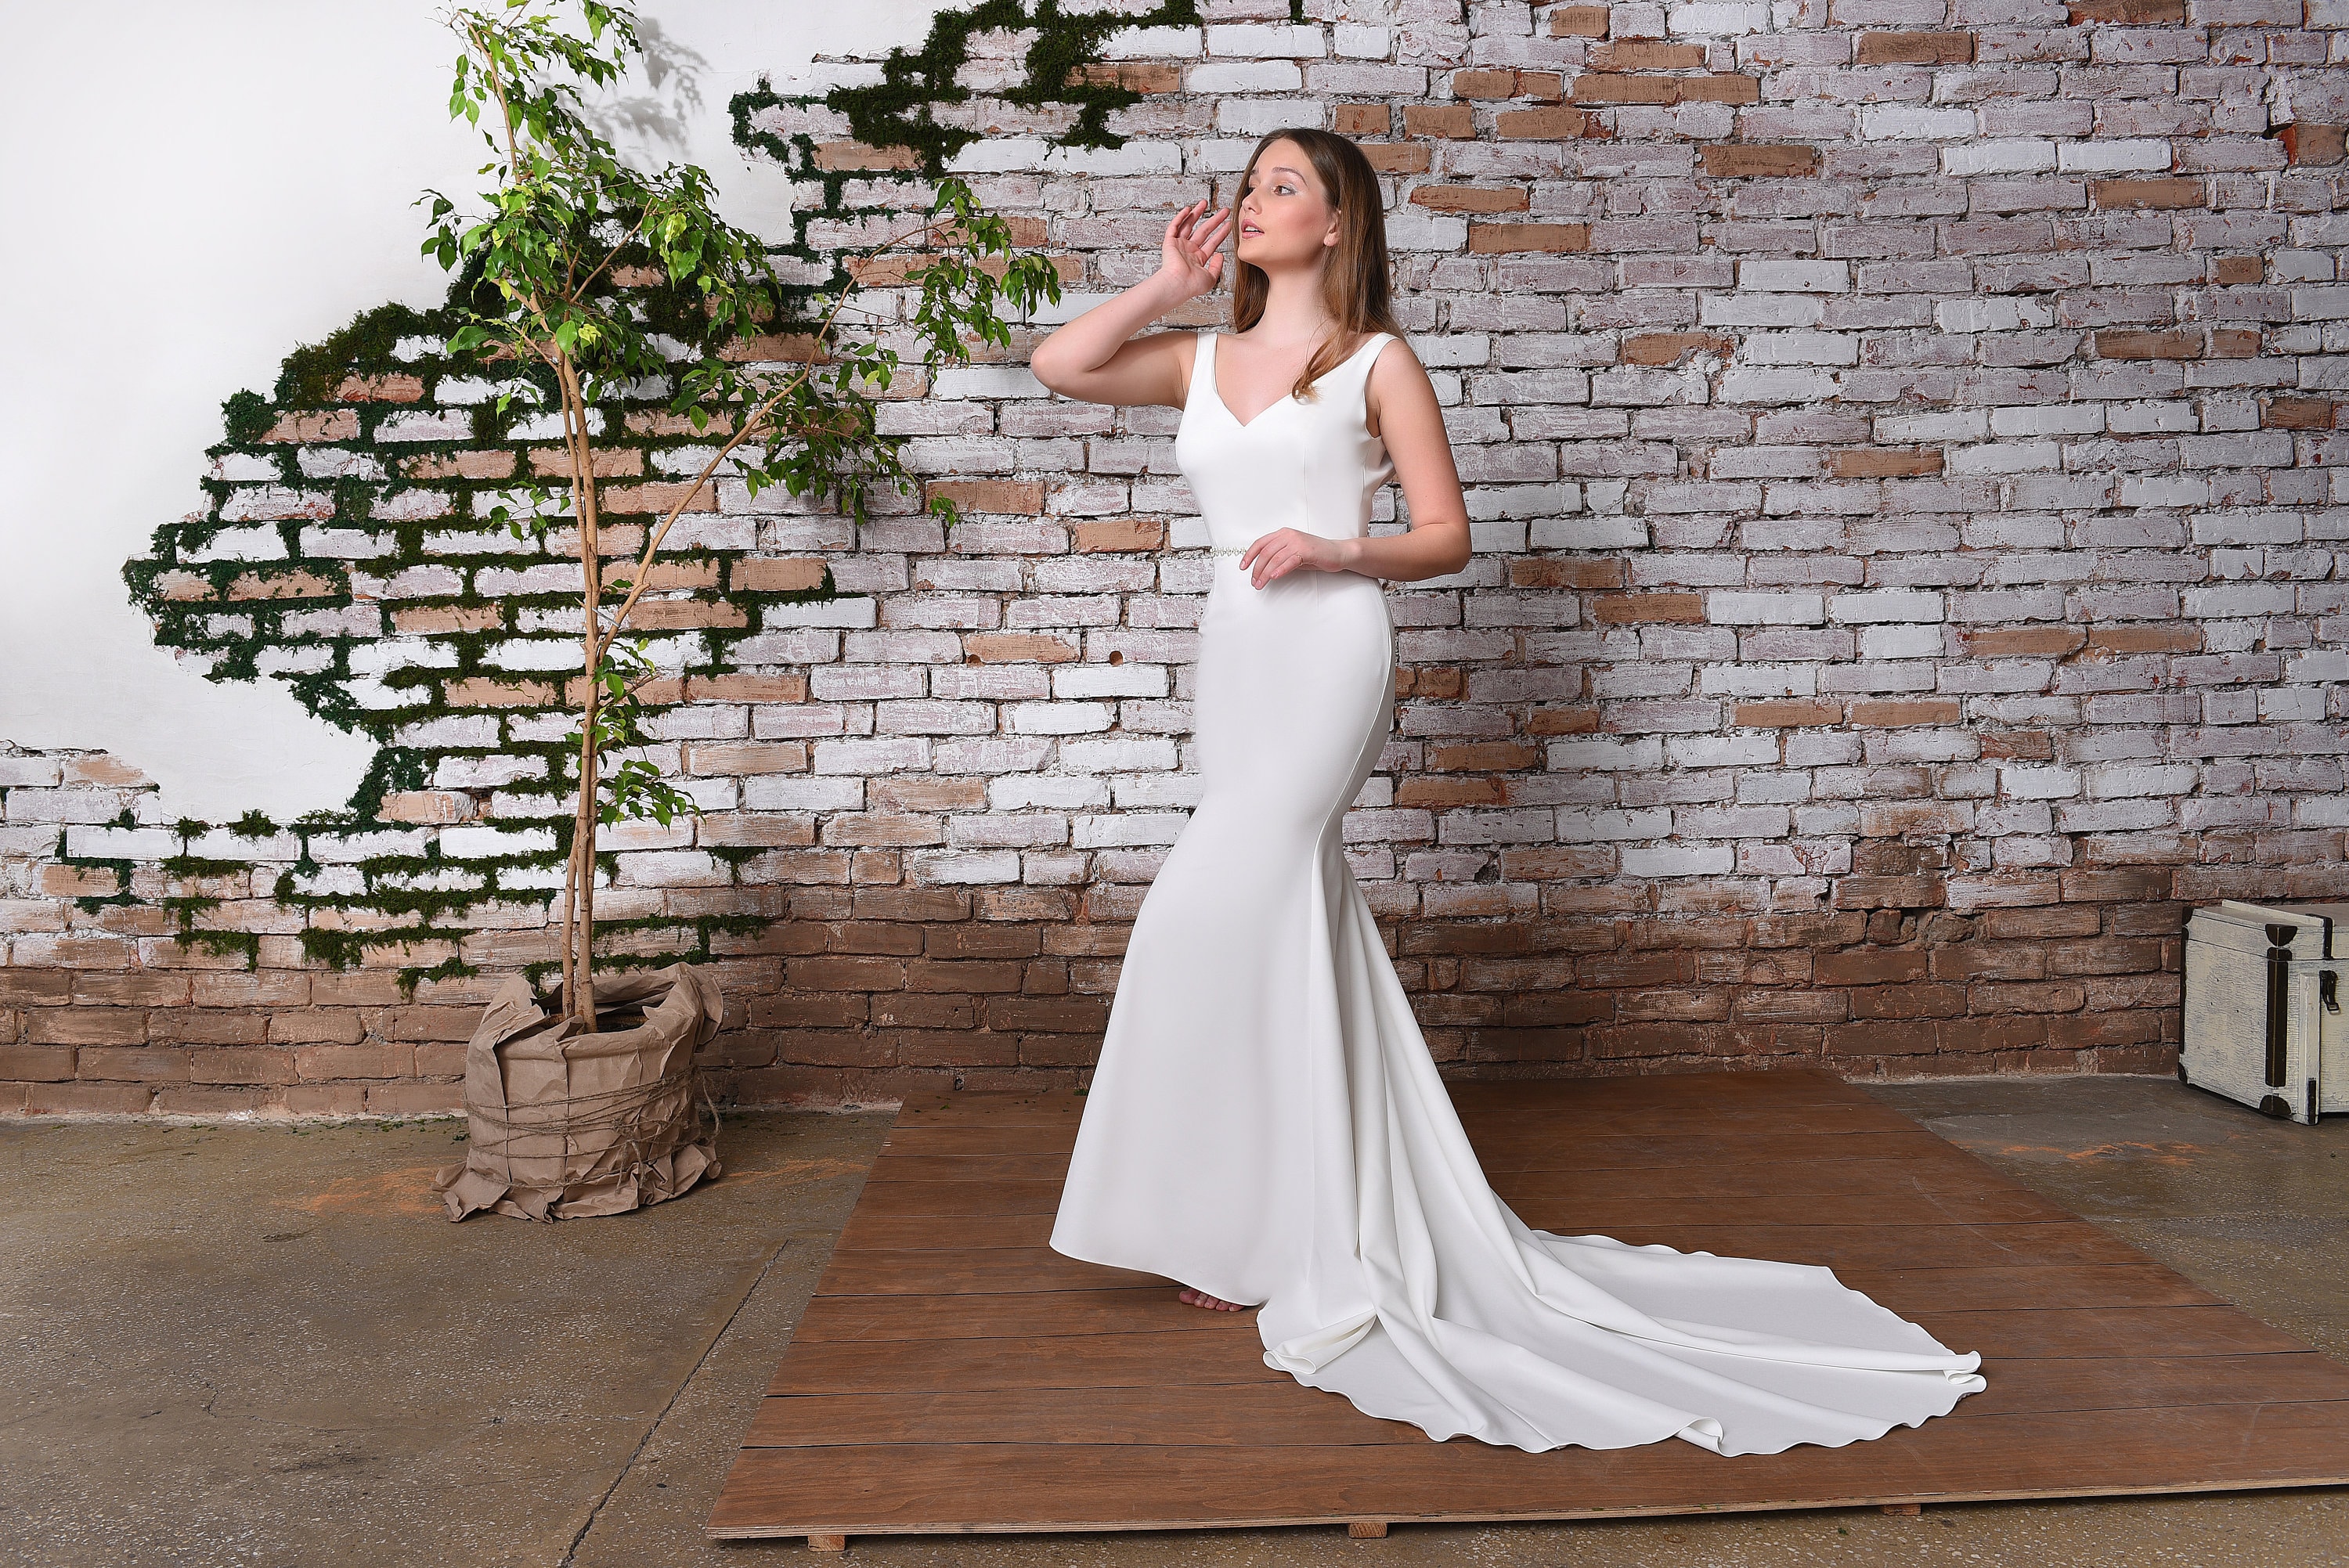 Lace Wedding Bodysuit Romantic Lace Blouse Tight Fitting Lace Top Wedding  Bodysuit Bridal Top Wedding Separates 